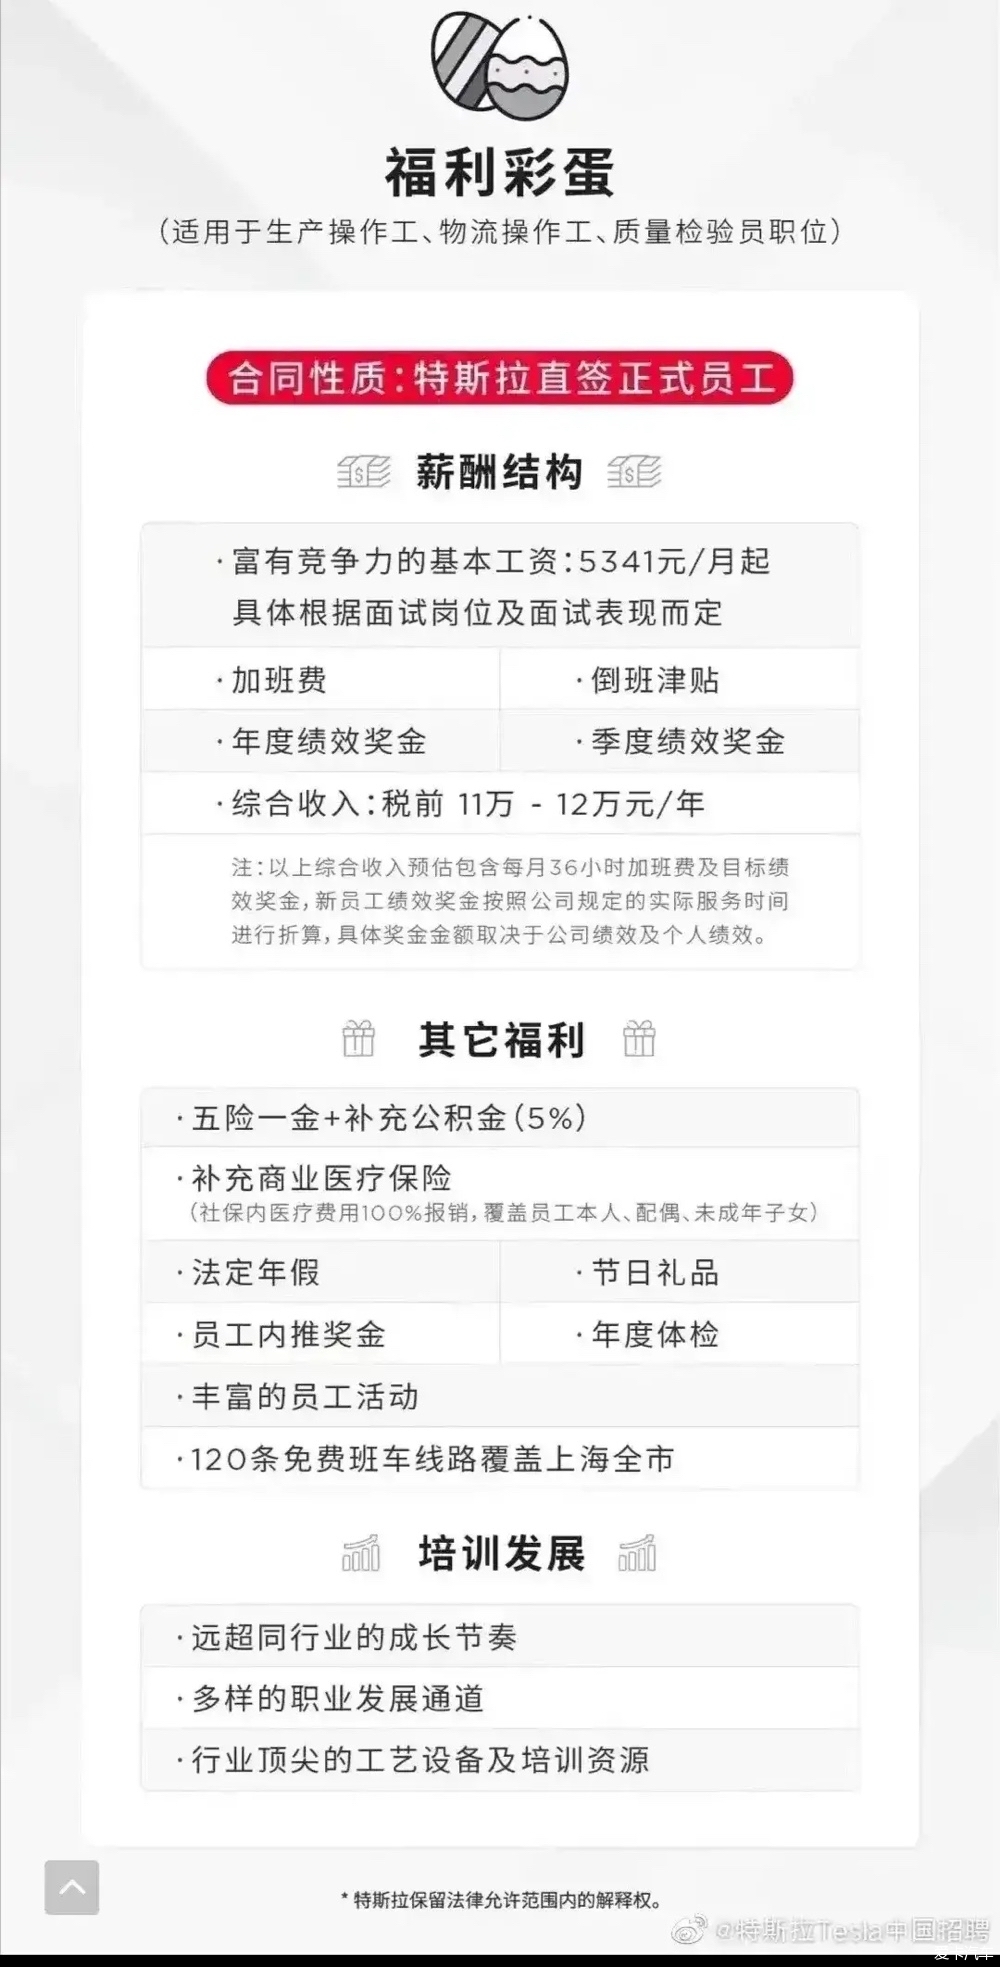 特斯拉中国_特斯拉中国官网_特斯拉 model 3 中国售价